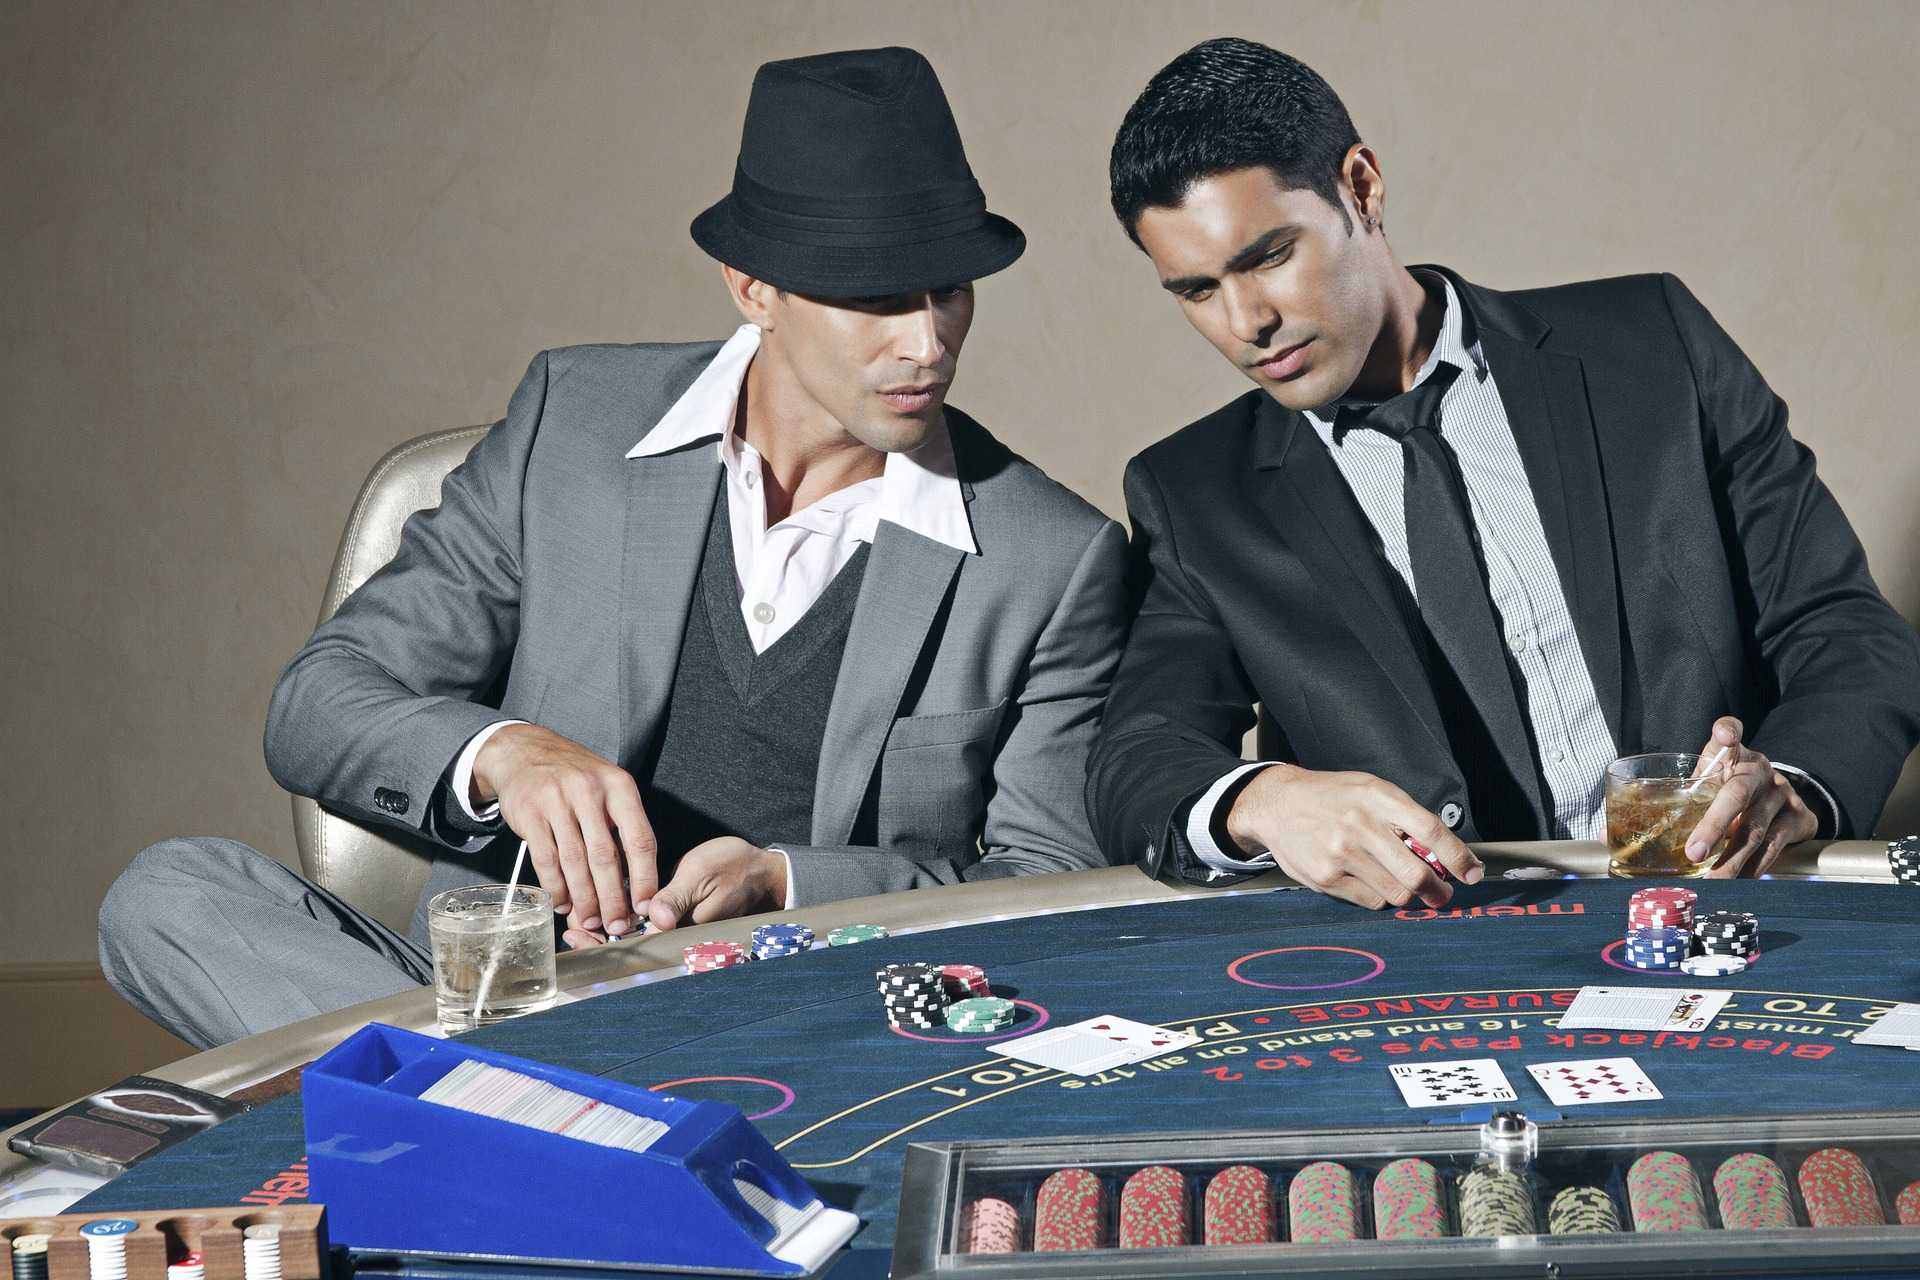 Zwei Typen spielen Blackjack am Tisch